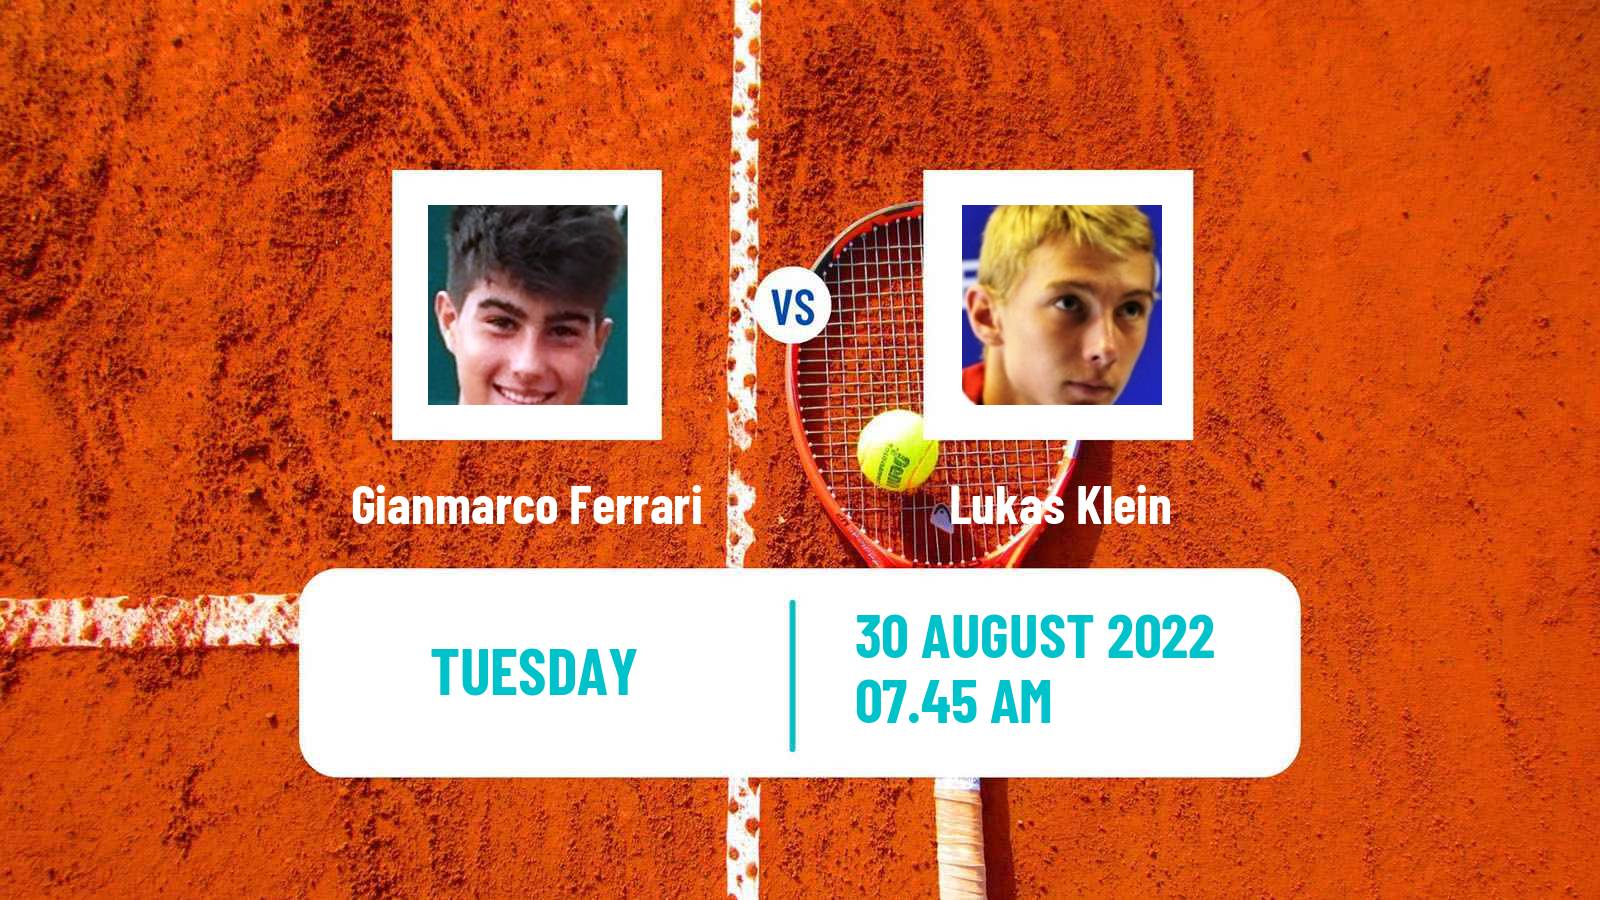 Tennis ATP Challenger Gianmarco Ferrari - Lukas Klein